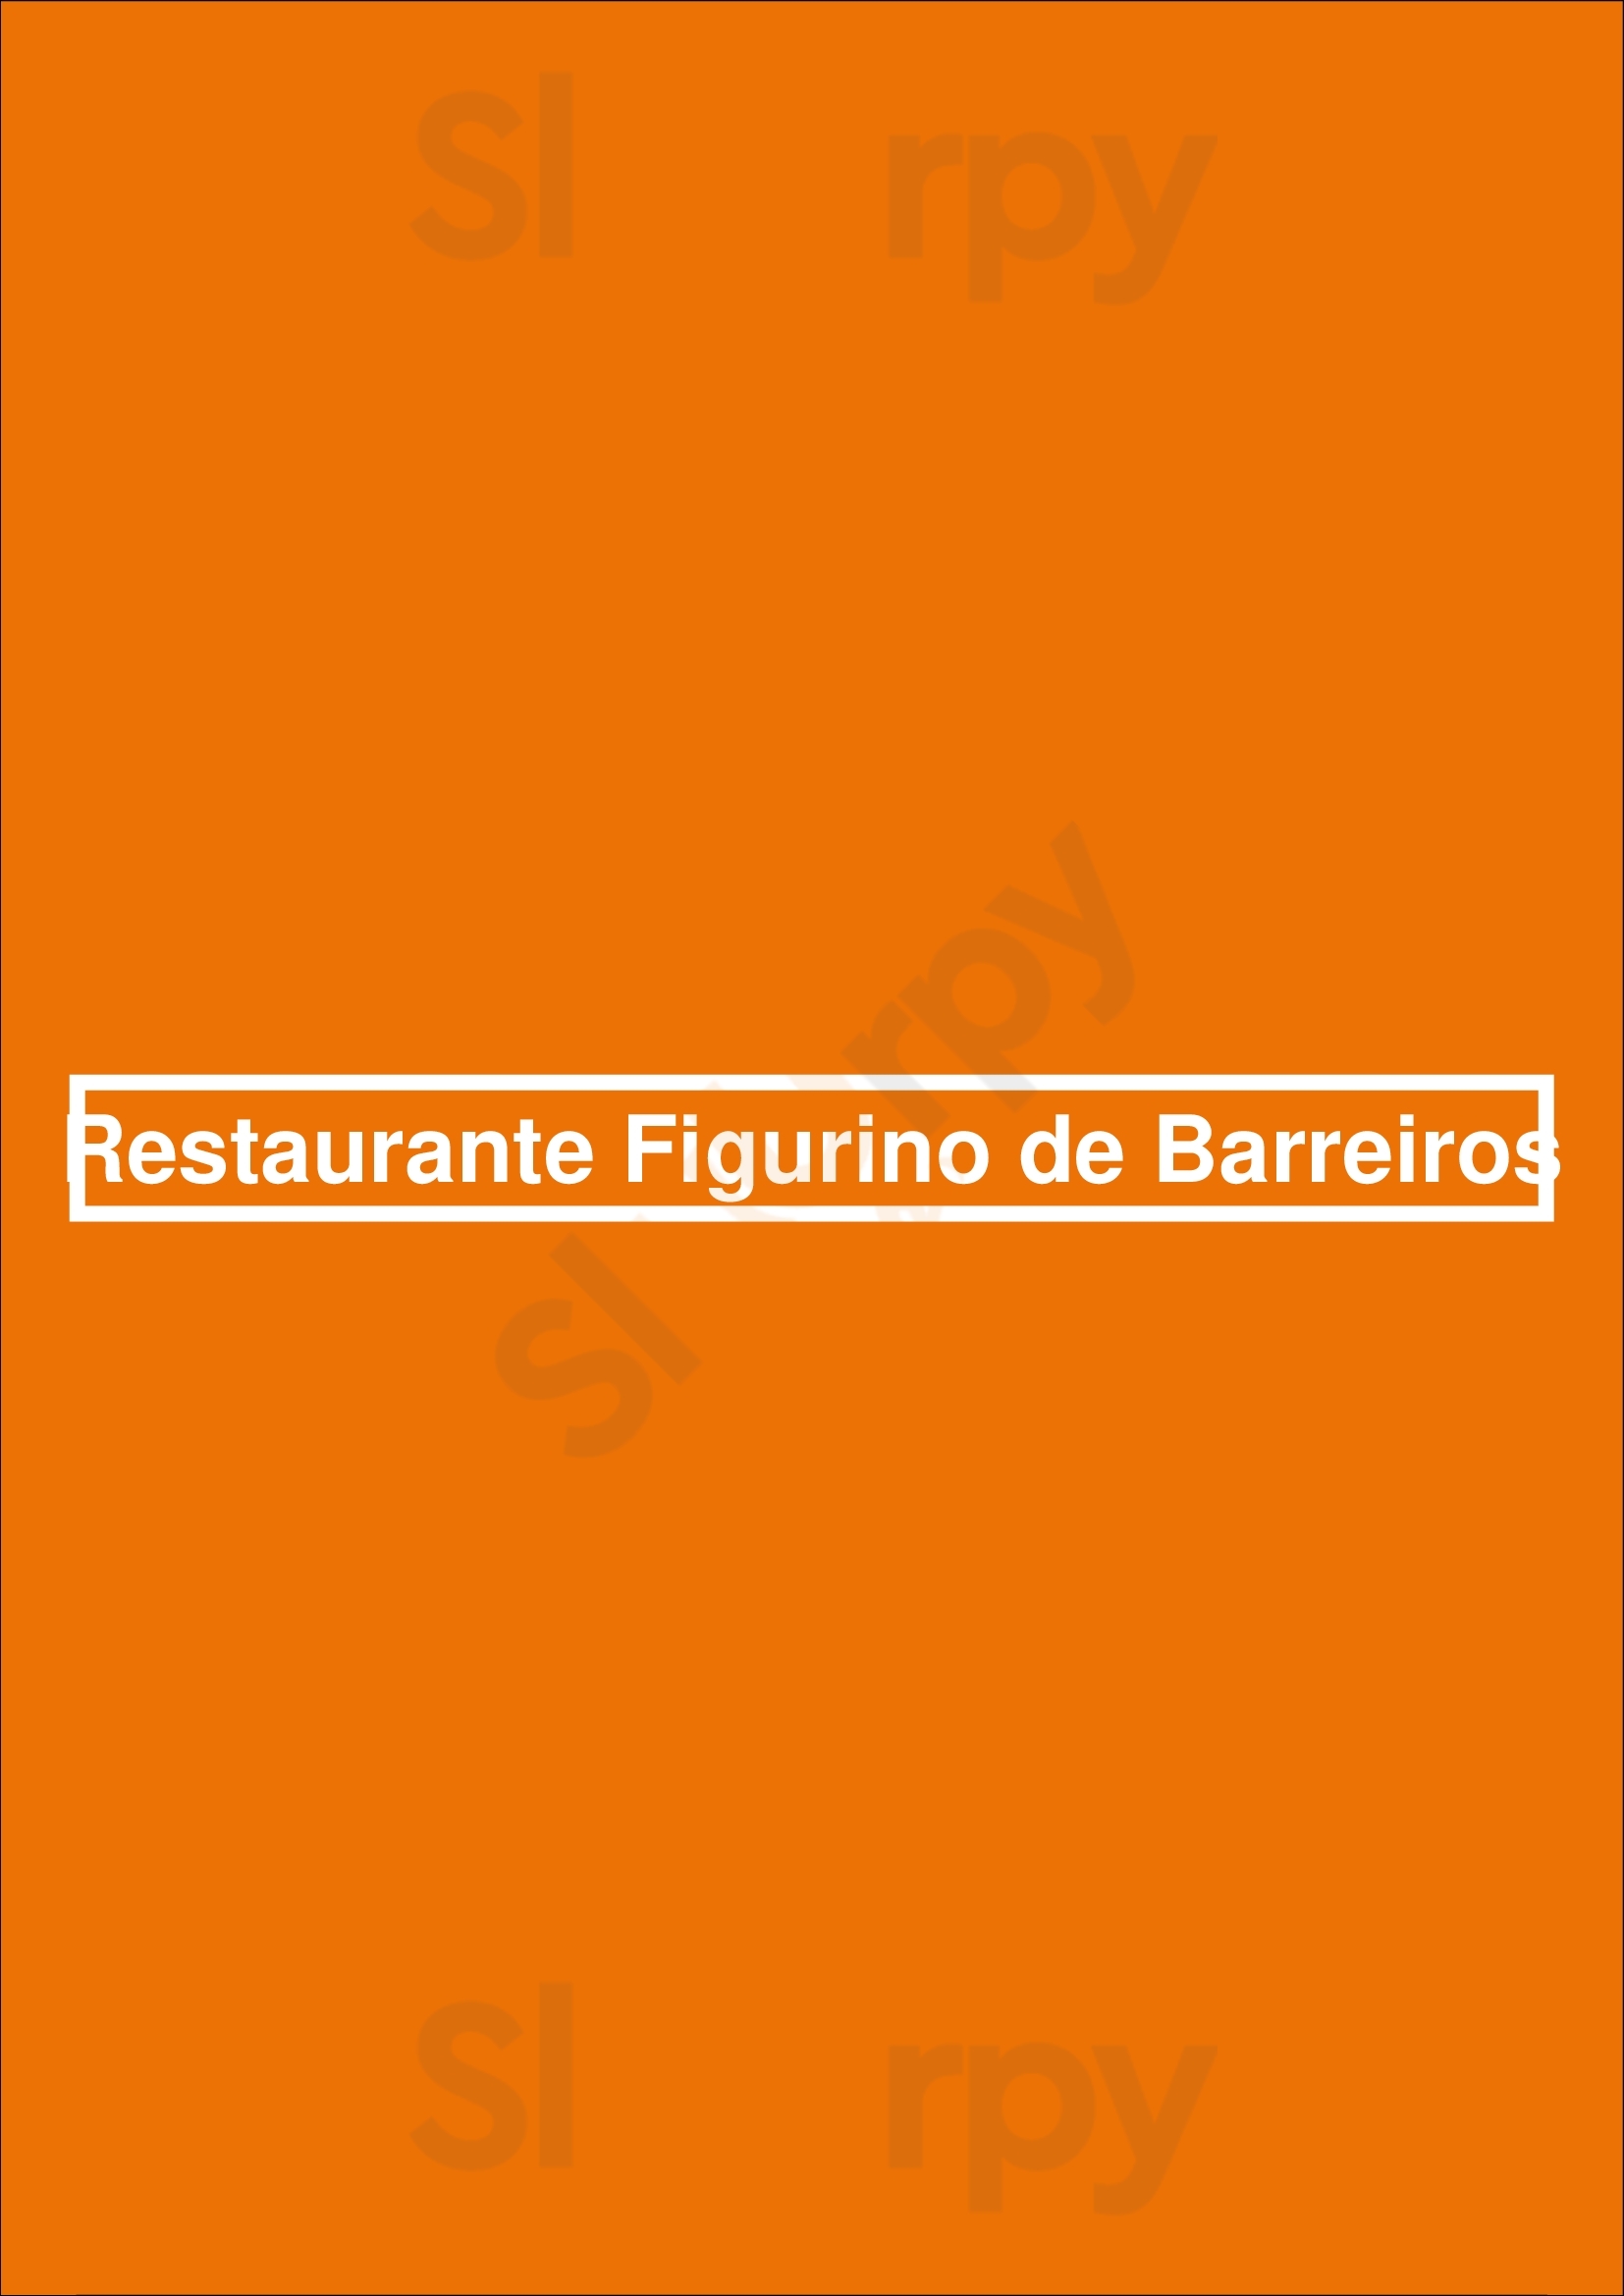 Restaurante Figurino De Barreiros Maia Menu - 1